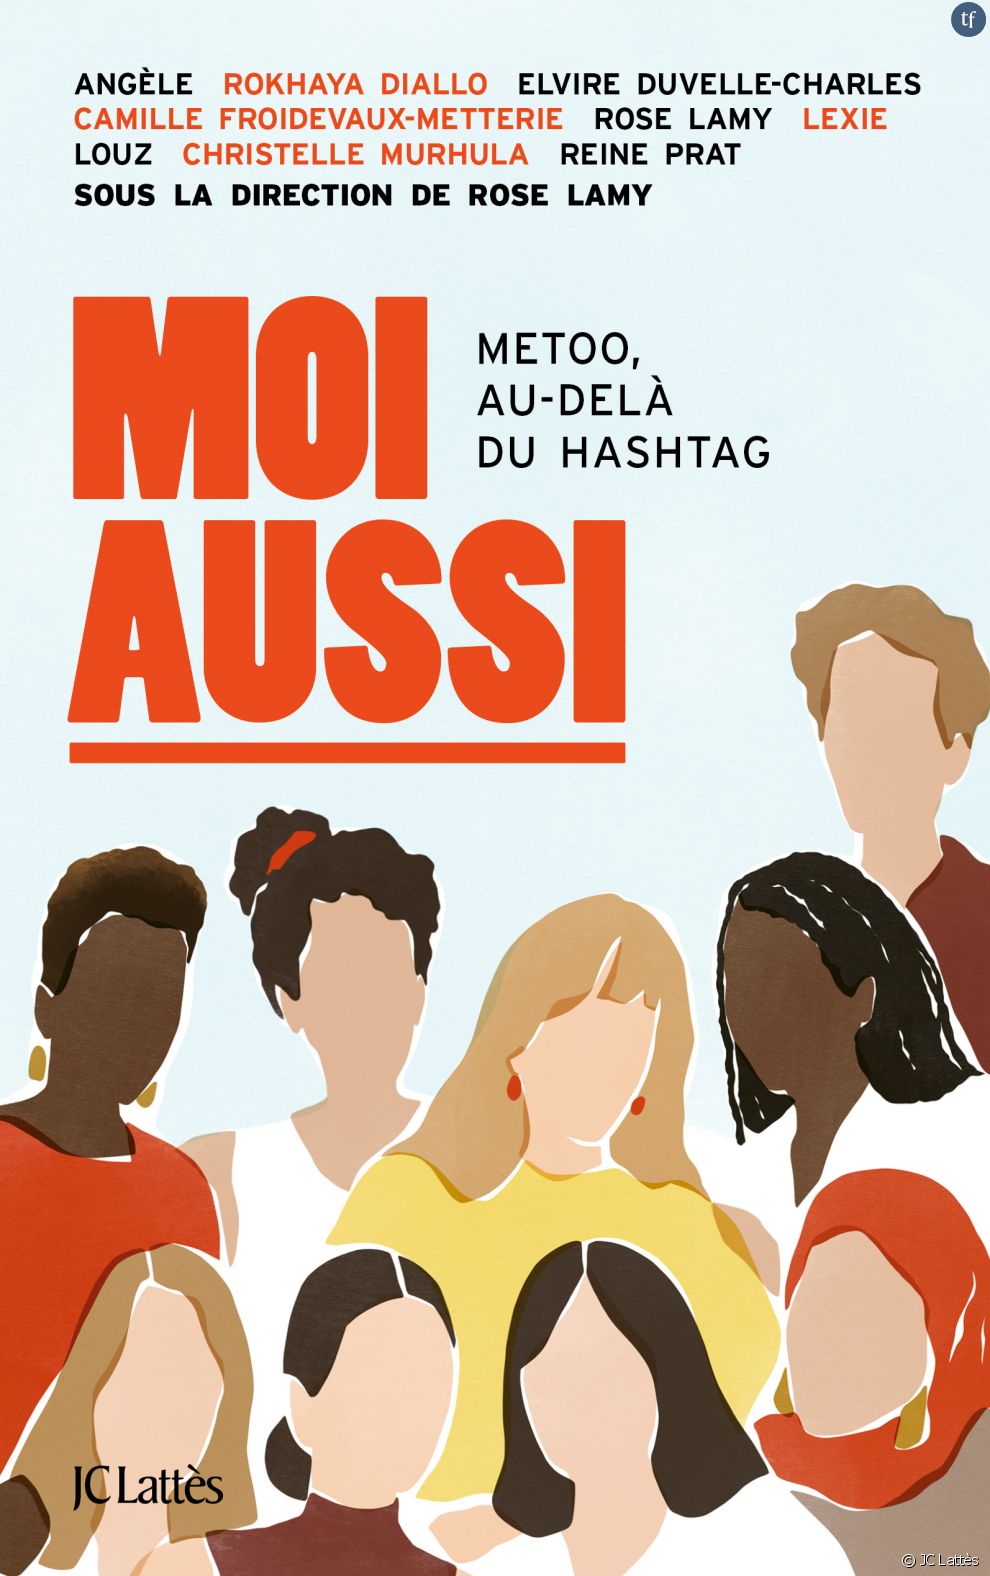 Rose Lamy dirige un ouvrage collectif, &quot;Moi Aussi&quot;, qui revient sur cinq ans de révolution #MeToo. De luttes féministes... Et de retours de bâtons réactionnaires.